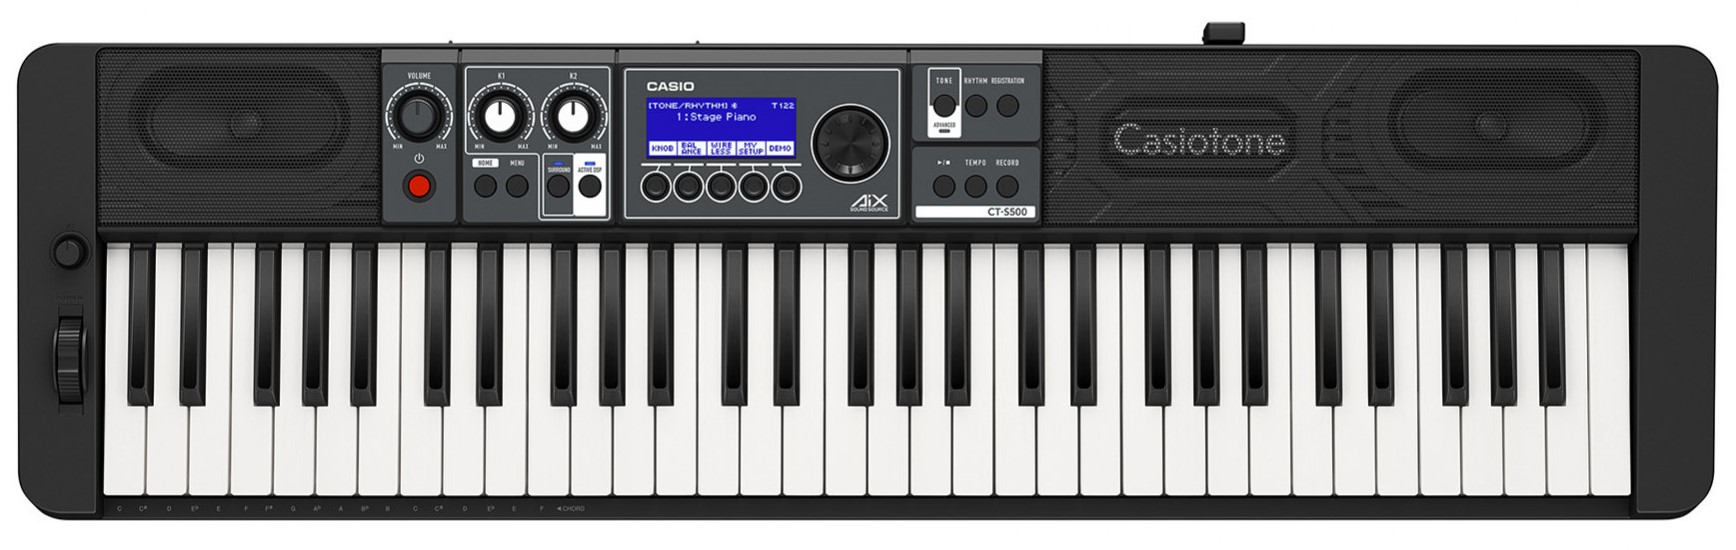 Køb Casio CT-S500 Keyboard - Sort - Pris 2595.00 kr.